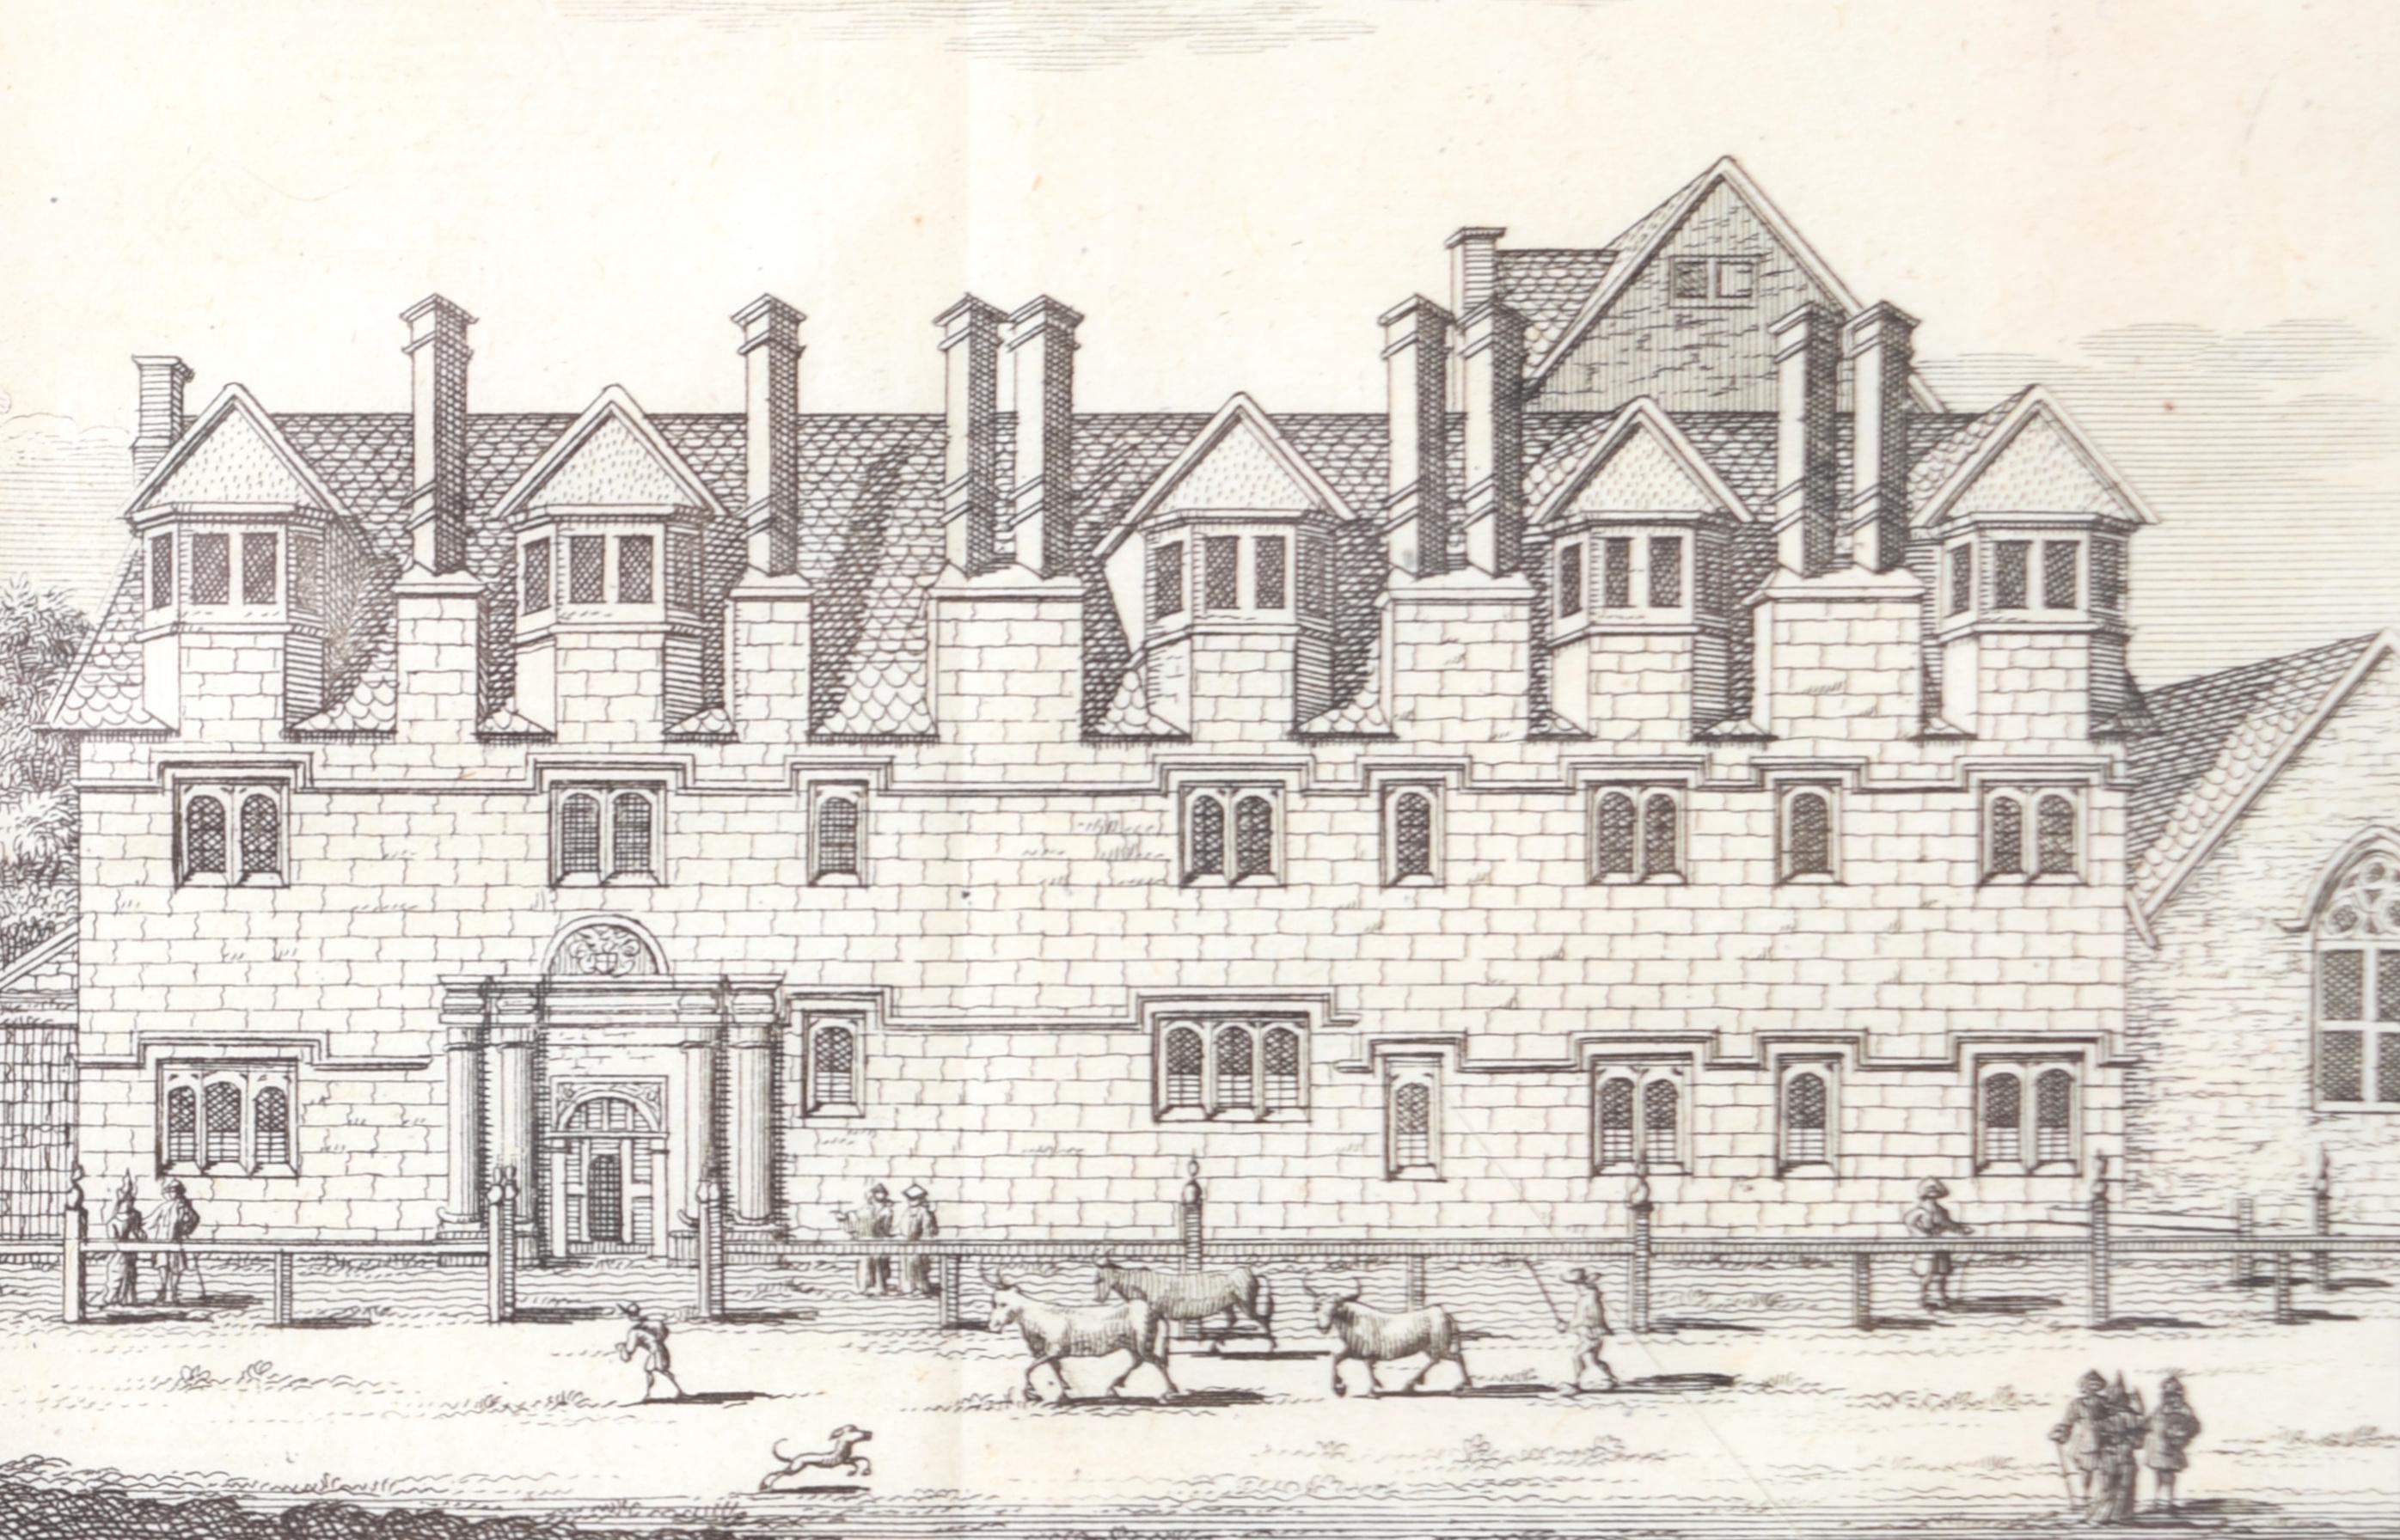 Pieter van der Aa (1659-1733), d'après David Loggan (1634-1692)
St Alban Hall, Oxford - aujourd'hui Merton College
12 x 16 cm
Gravure

St Alban Hall, parfois appelé St Alban's Hall ou Stubbins, était l'une des salles médiévales de l'université